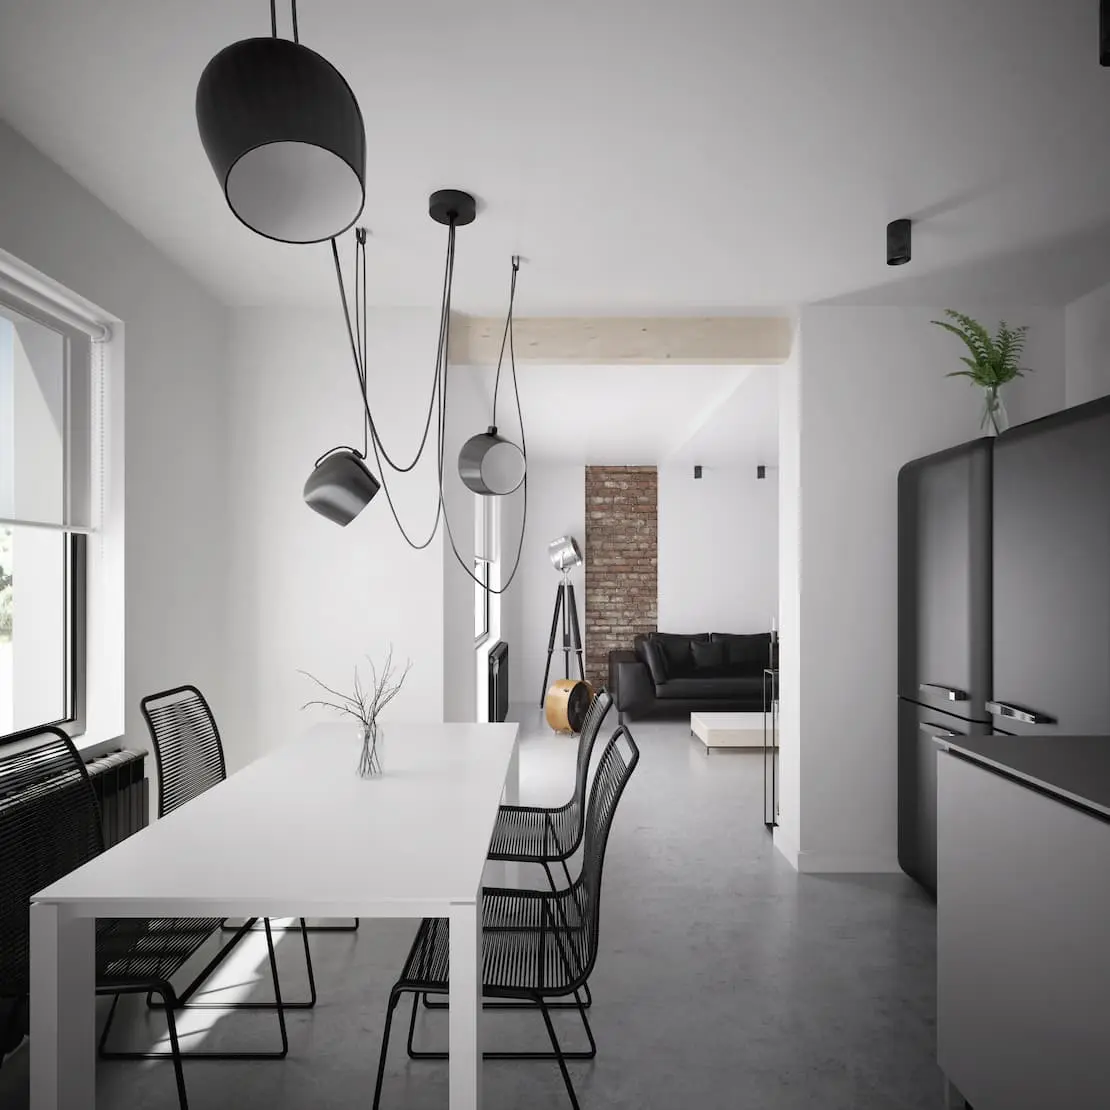 Moderná kuchyňa s pracovnou doskou z mikrocementu v čiernej farbe